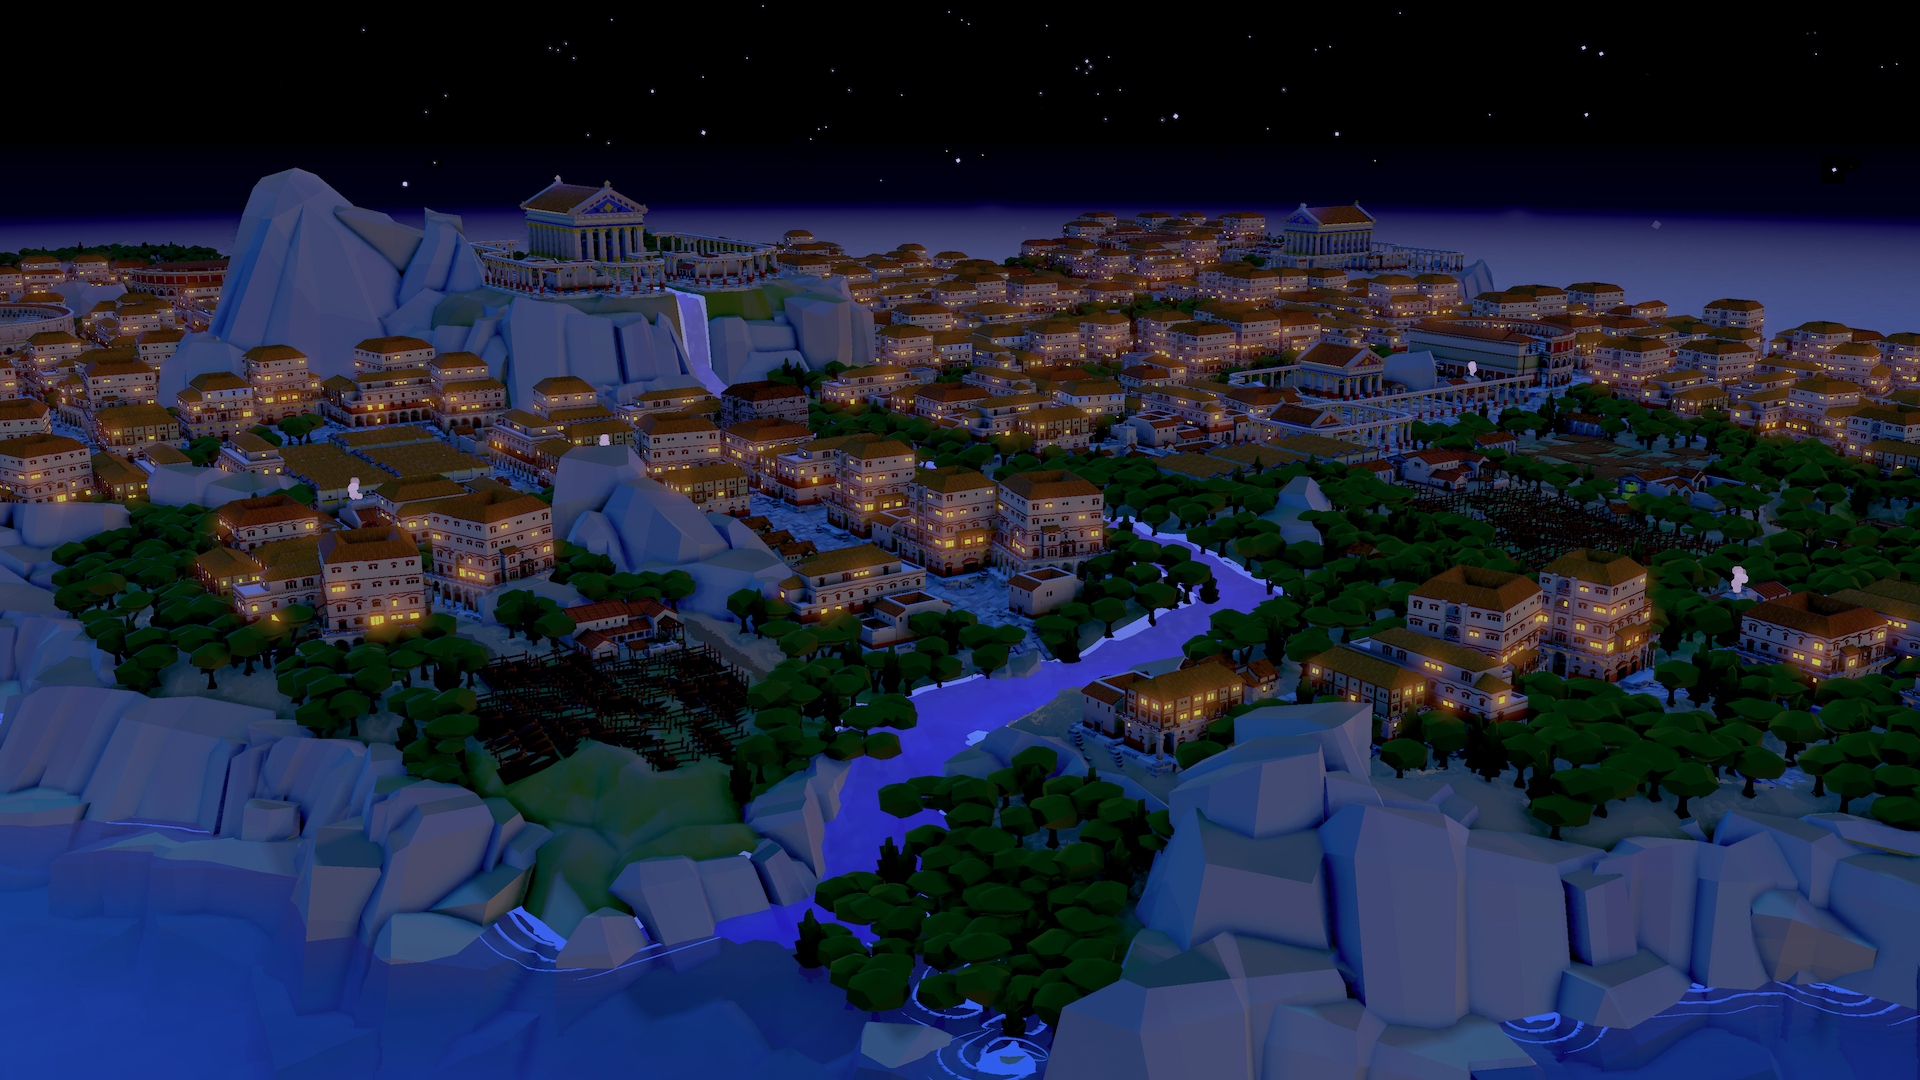 Una imagen nocturna del paisaje urbano del Imperio Romano desde Nova Roma